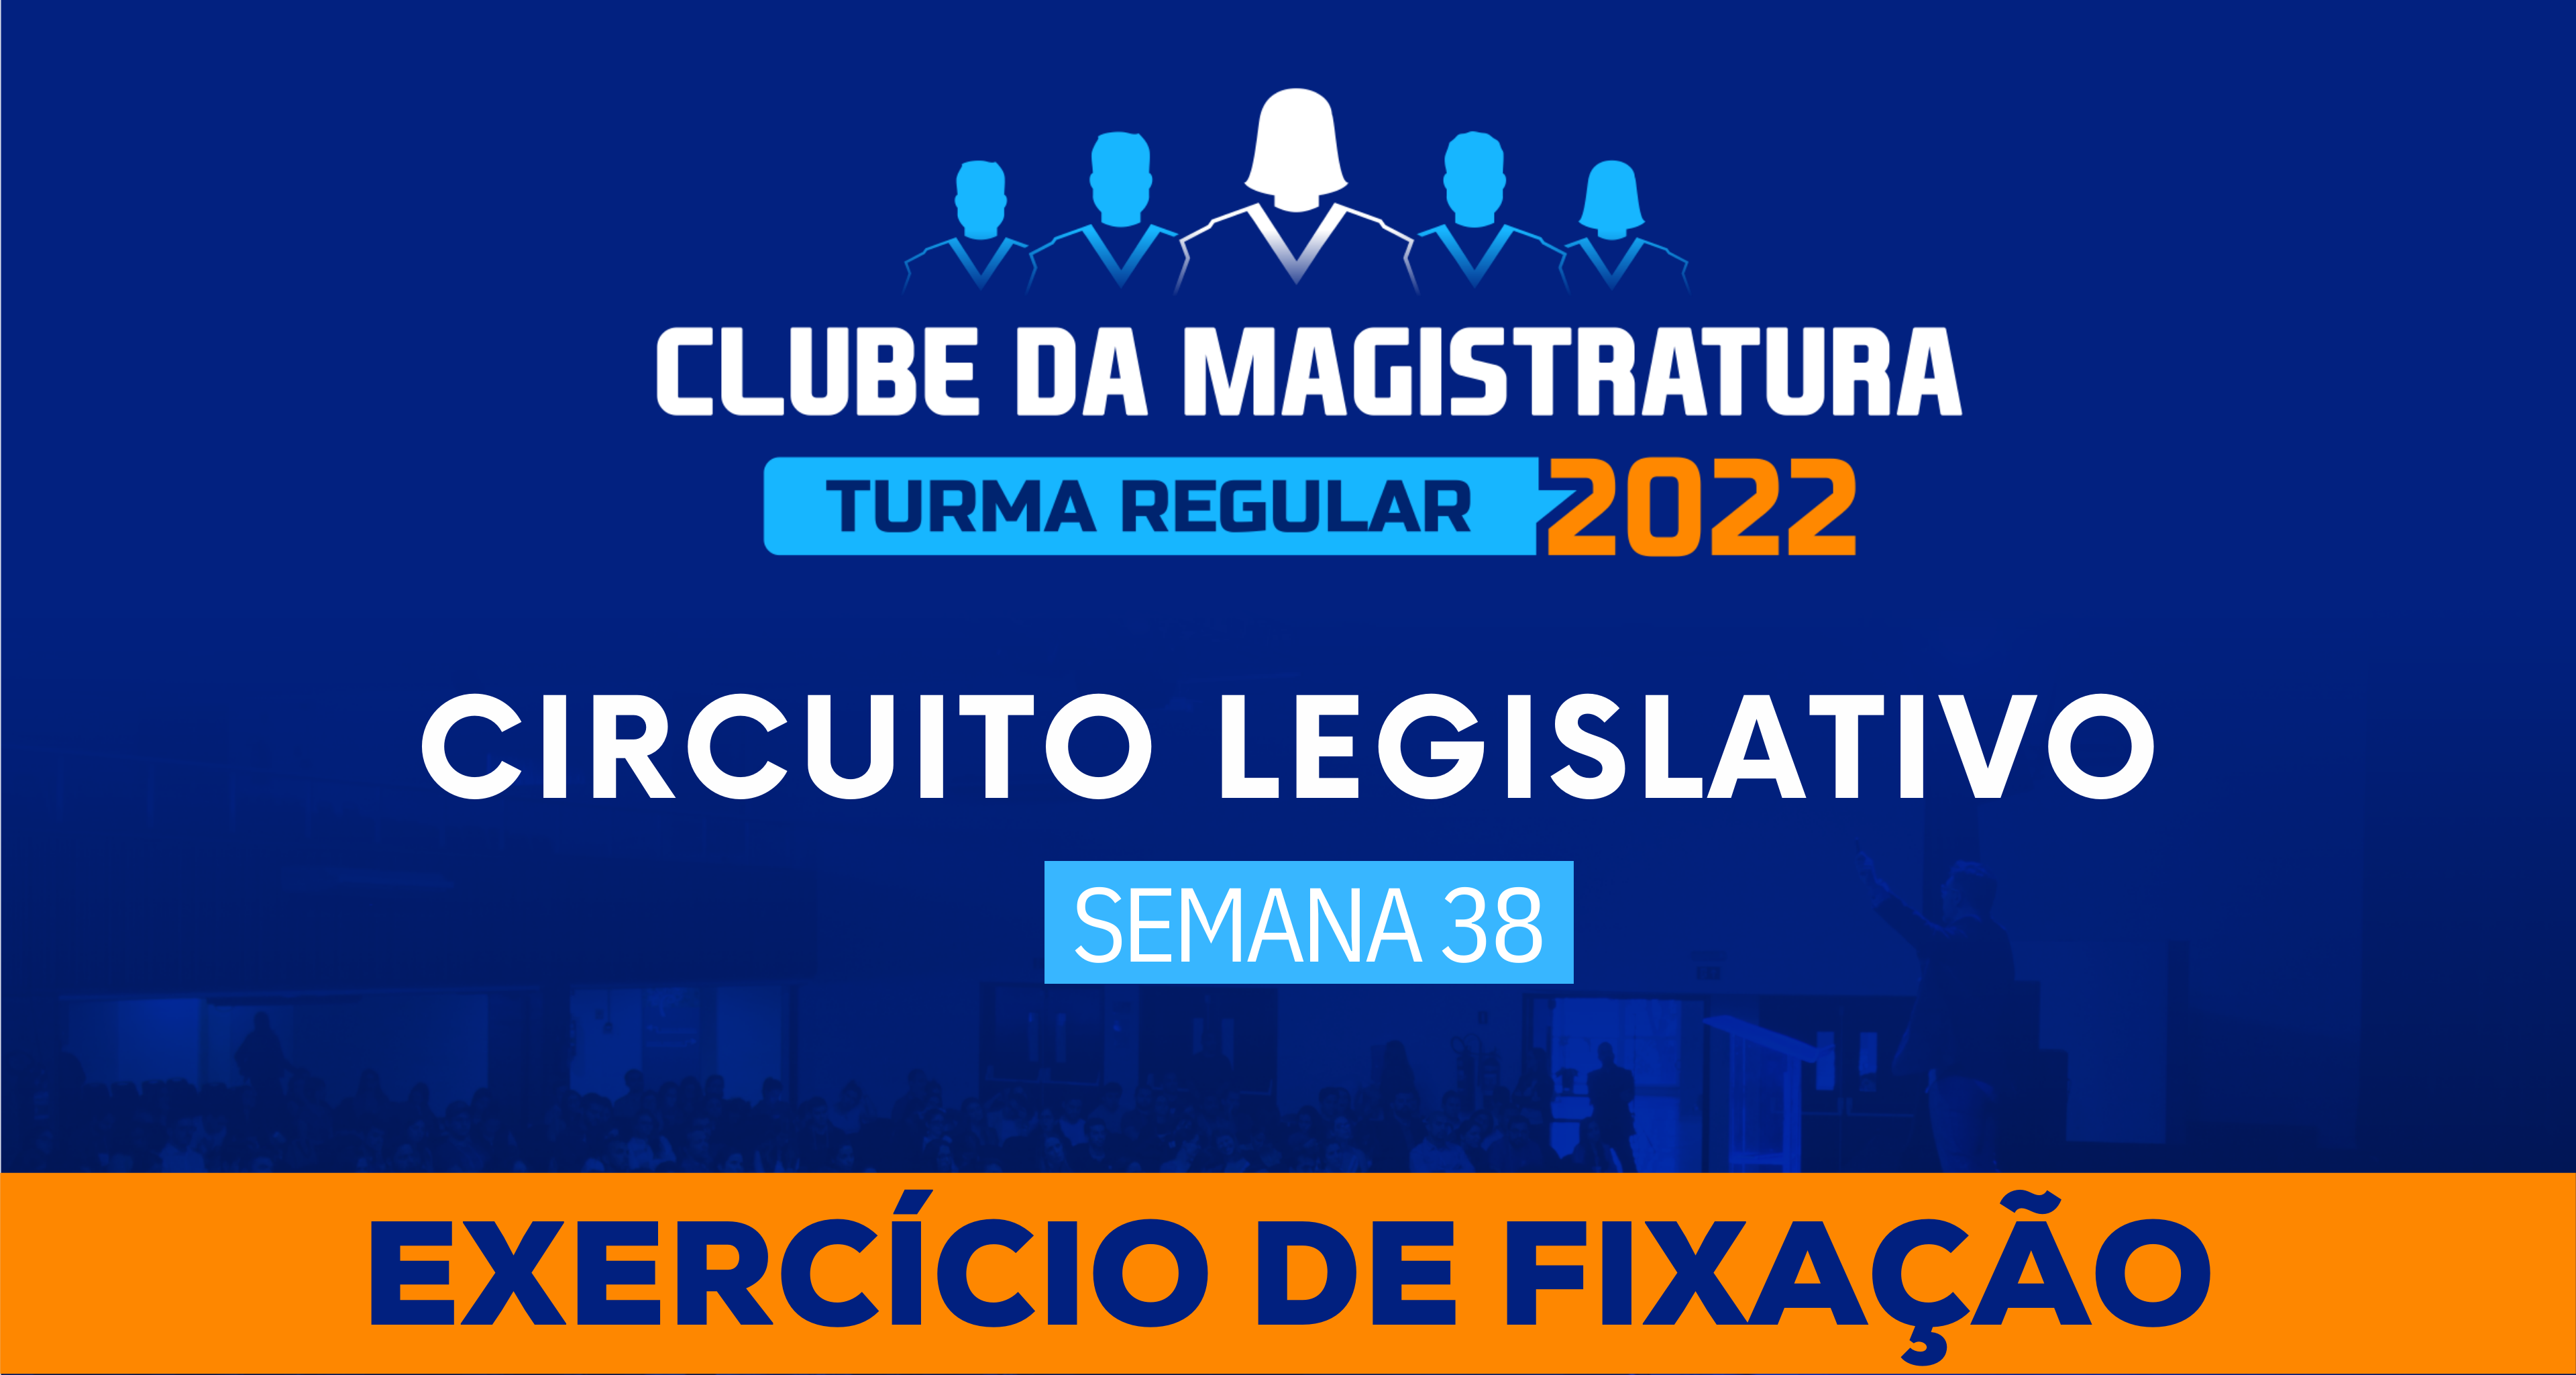 Circuito Legislativo 2022.1 (Clube da Magistratura - Semana 38)